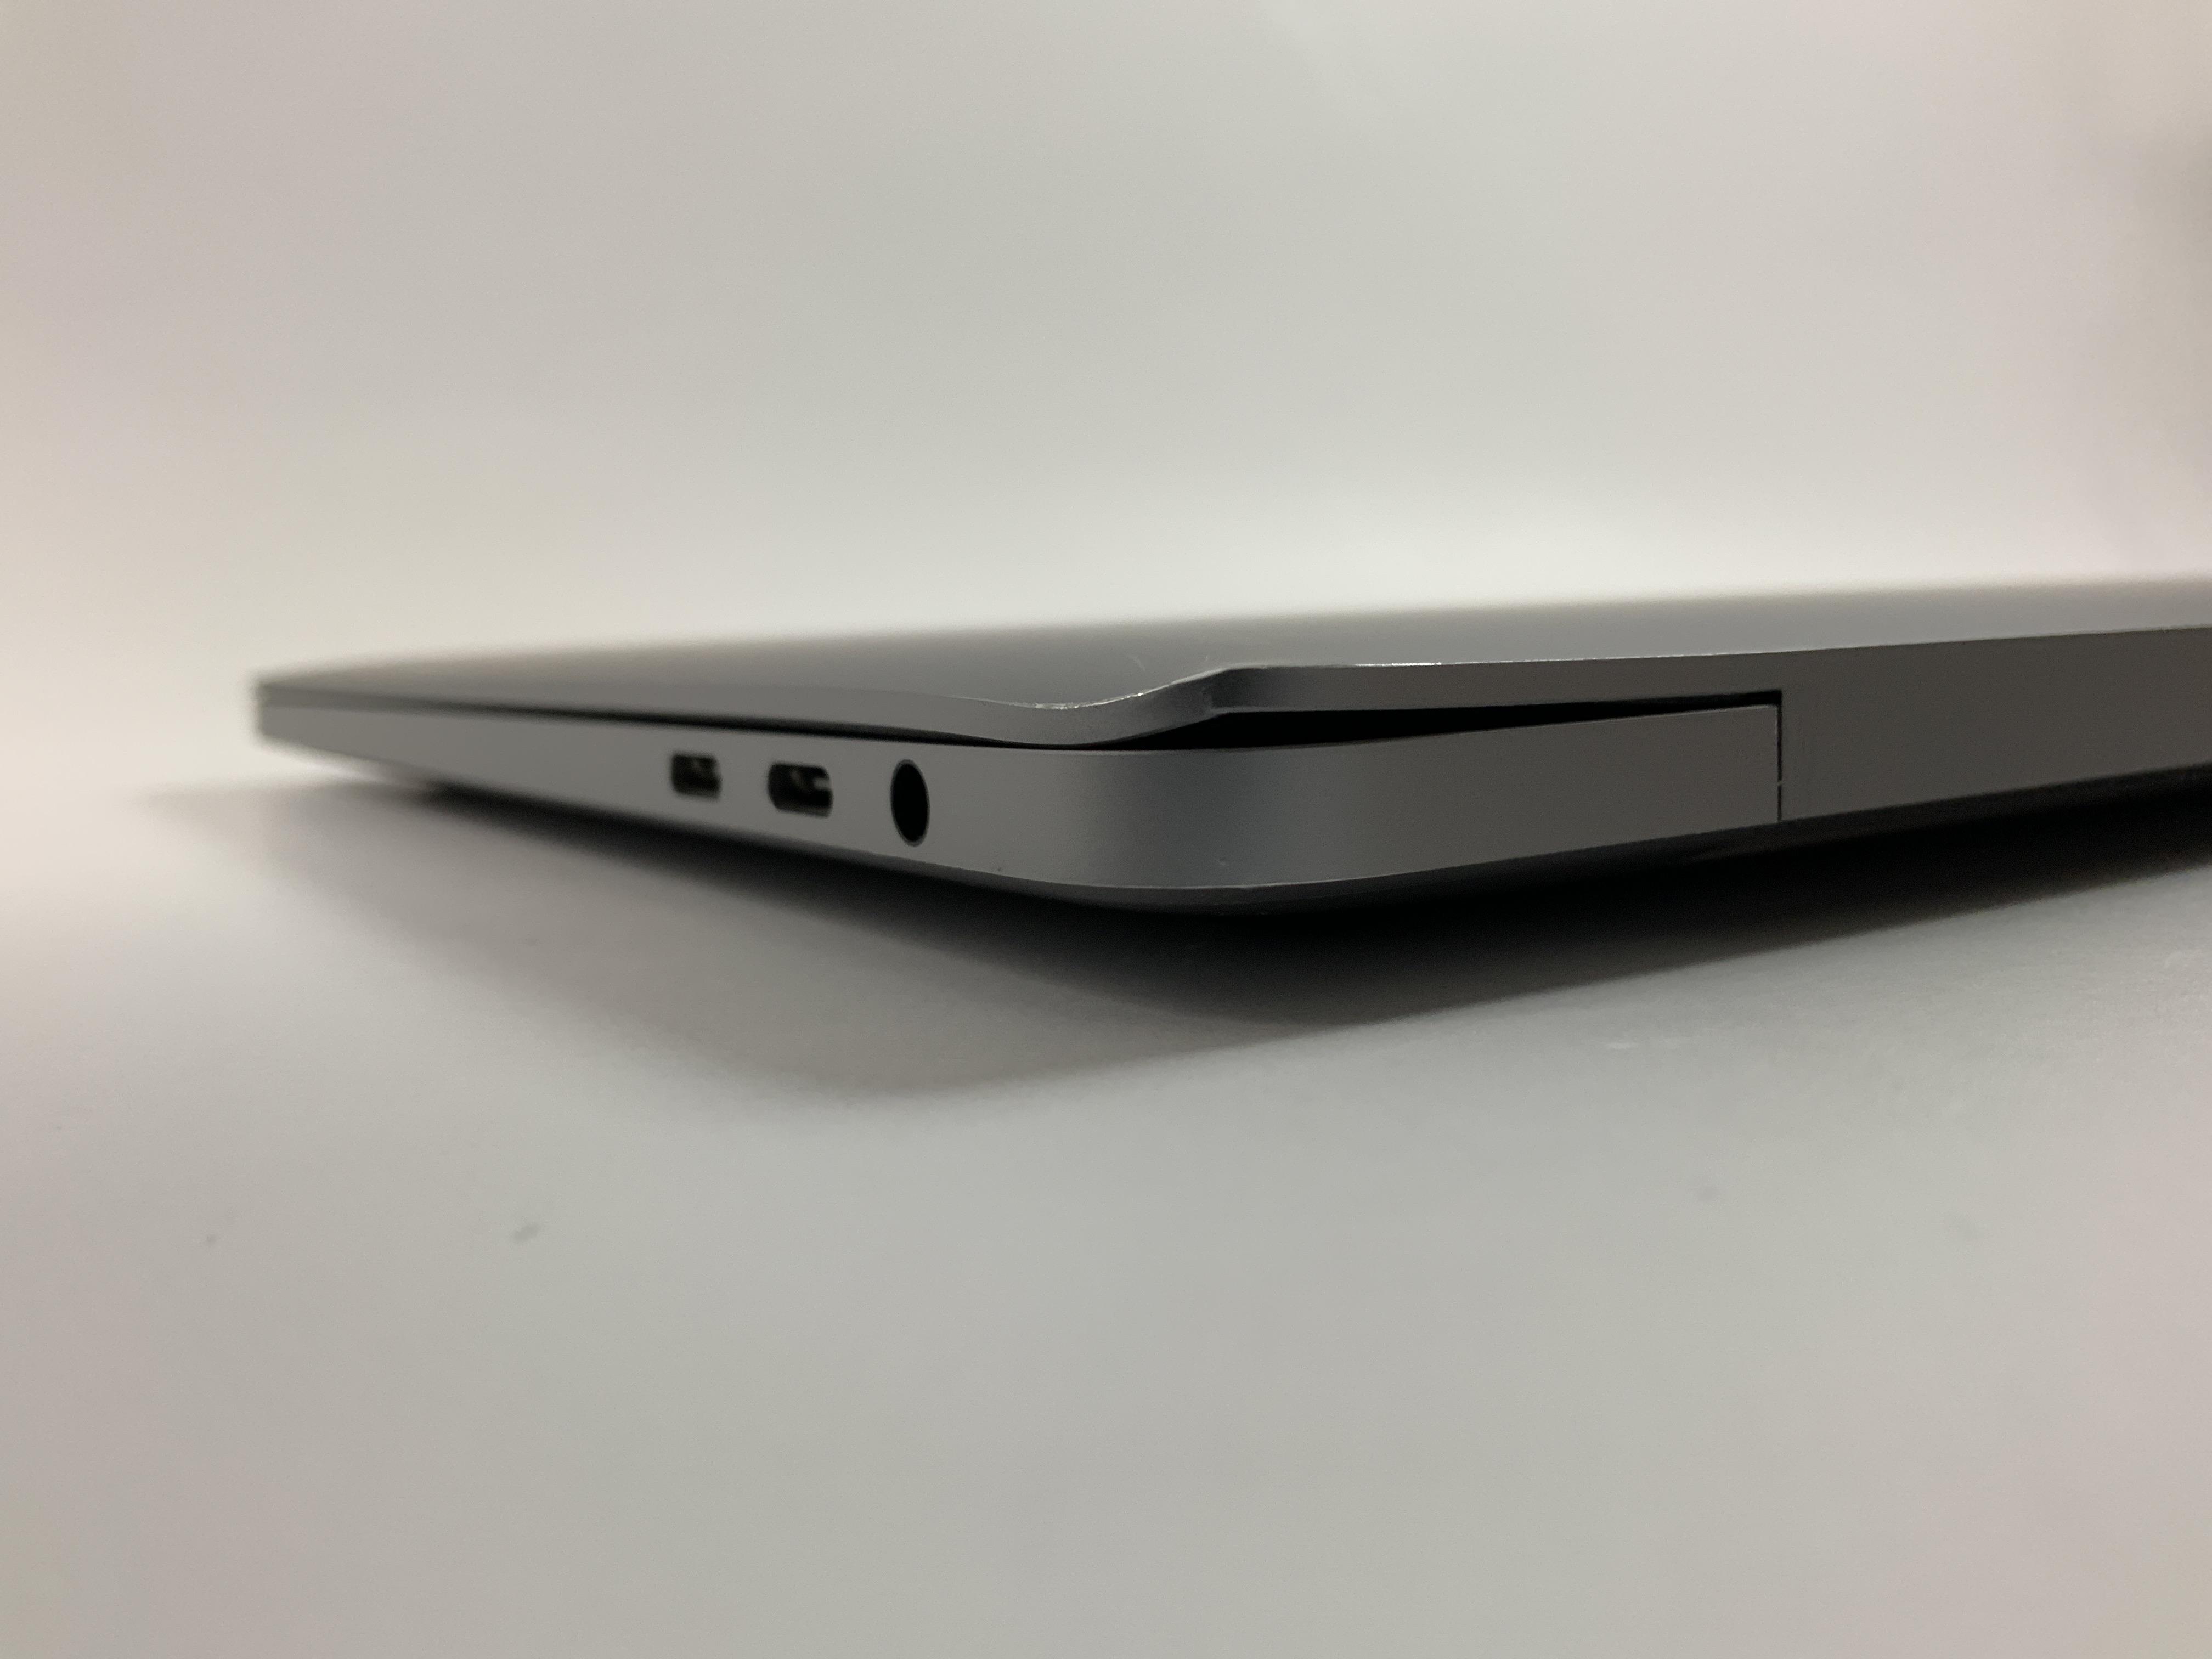 MacBook Pro 13" 4TBT Mid 2020 (Intel Quad-Core i5 2.0 GHz 16 GB RAM 512 GB SSD), Space Gray, Intel Quad-Core i5 2.0 GHz, 16 GB RAM, 512 GB SSD, Bild 5